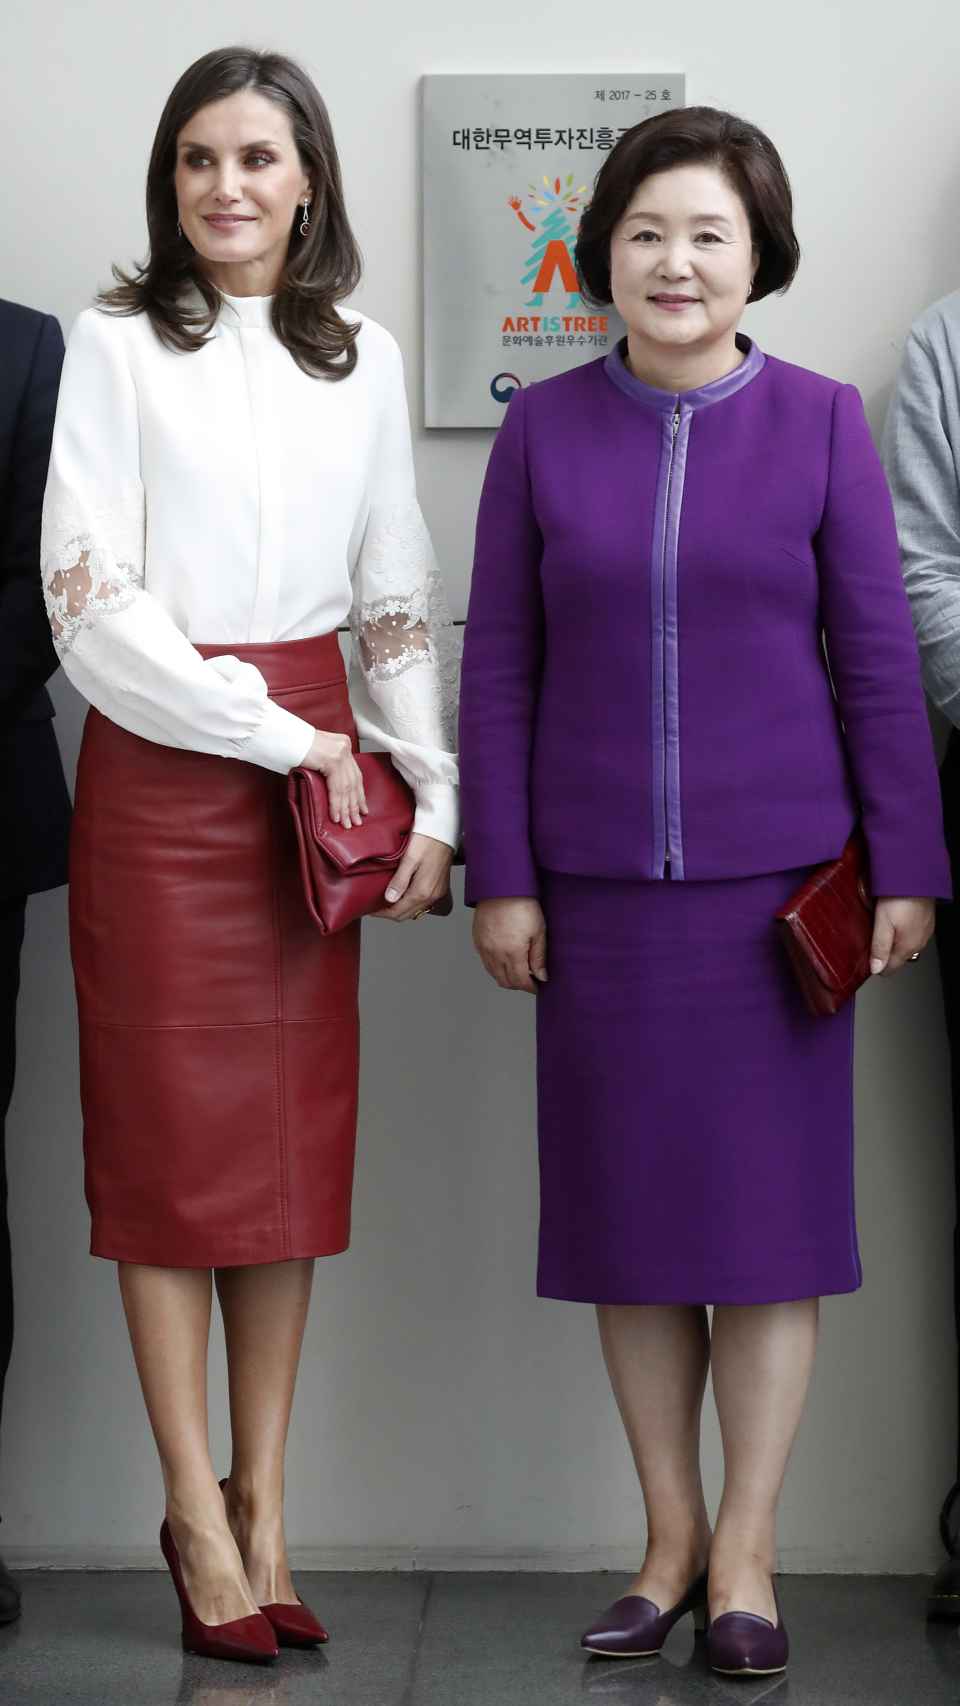 La reina Letizia ha tenido este jueves su primer acto en solitario en Corea.